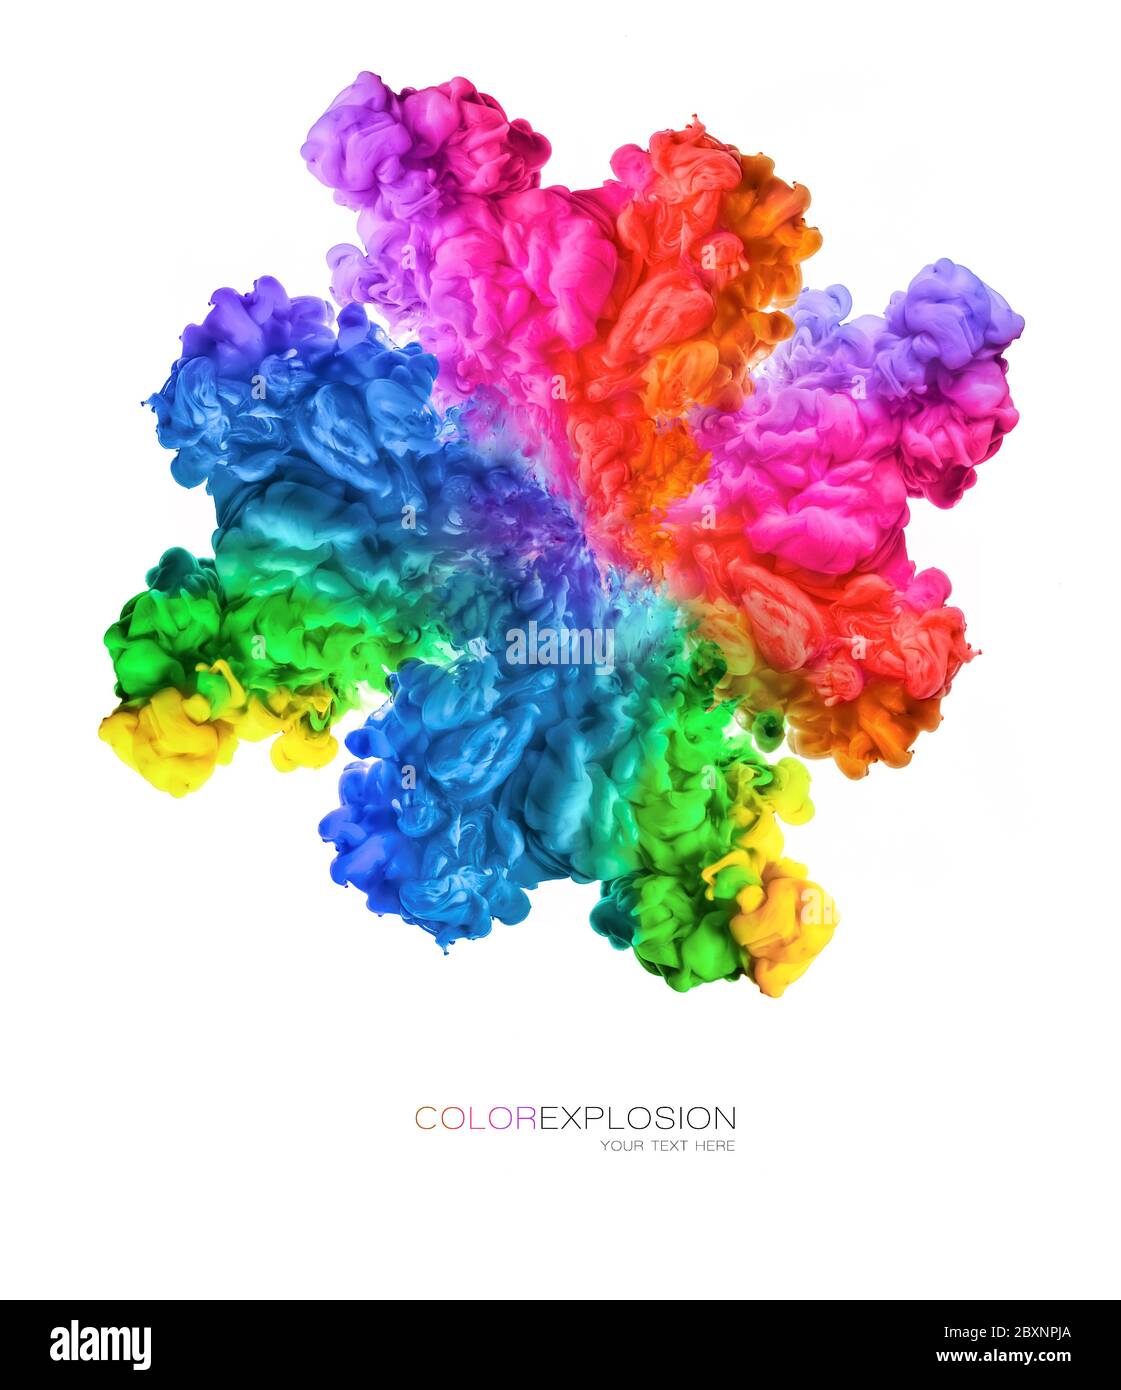 Farbexplosion. Regenbogen der Farben. Tinte in Wasser isoliert auf weißem Hintergrund mit Kopierplatz für Text Stockfoto